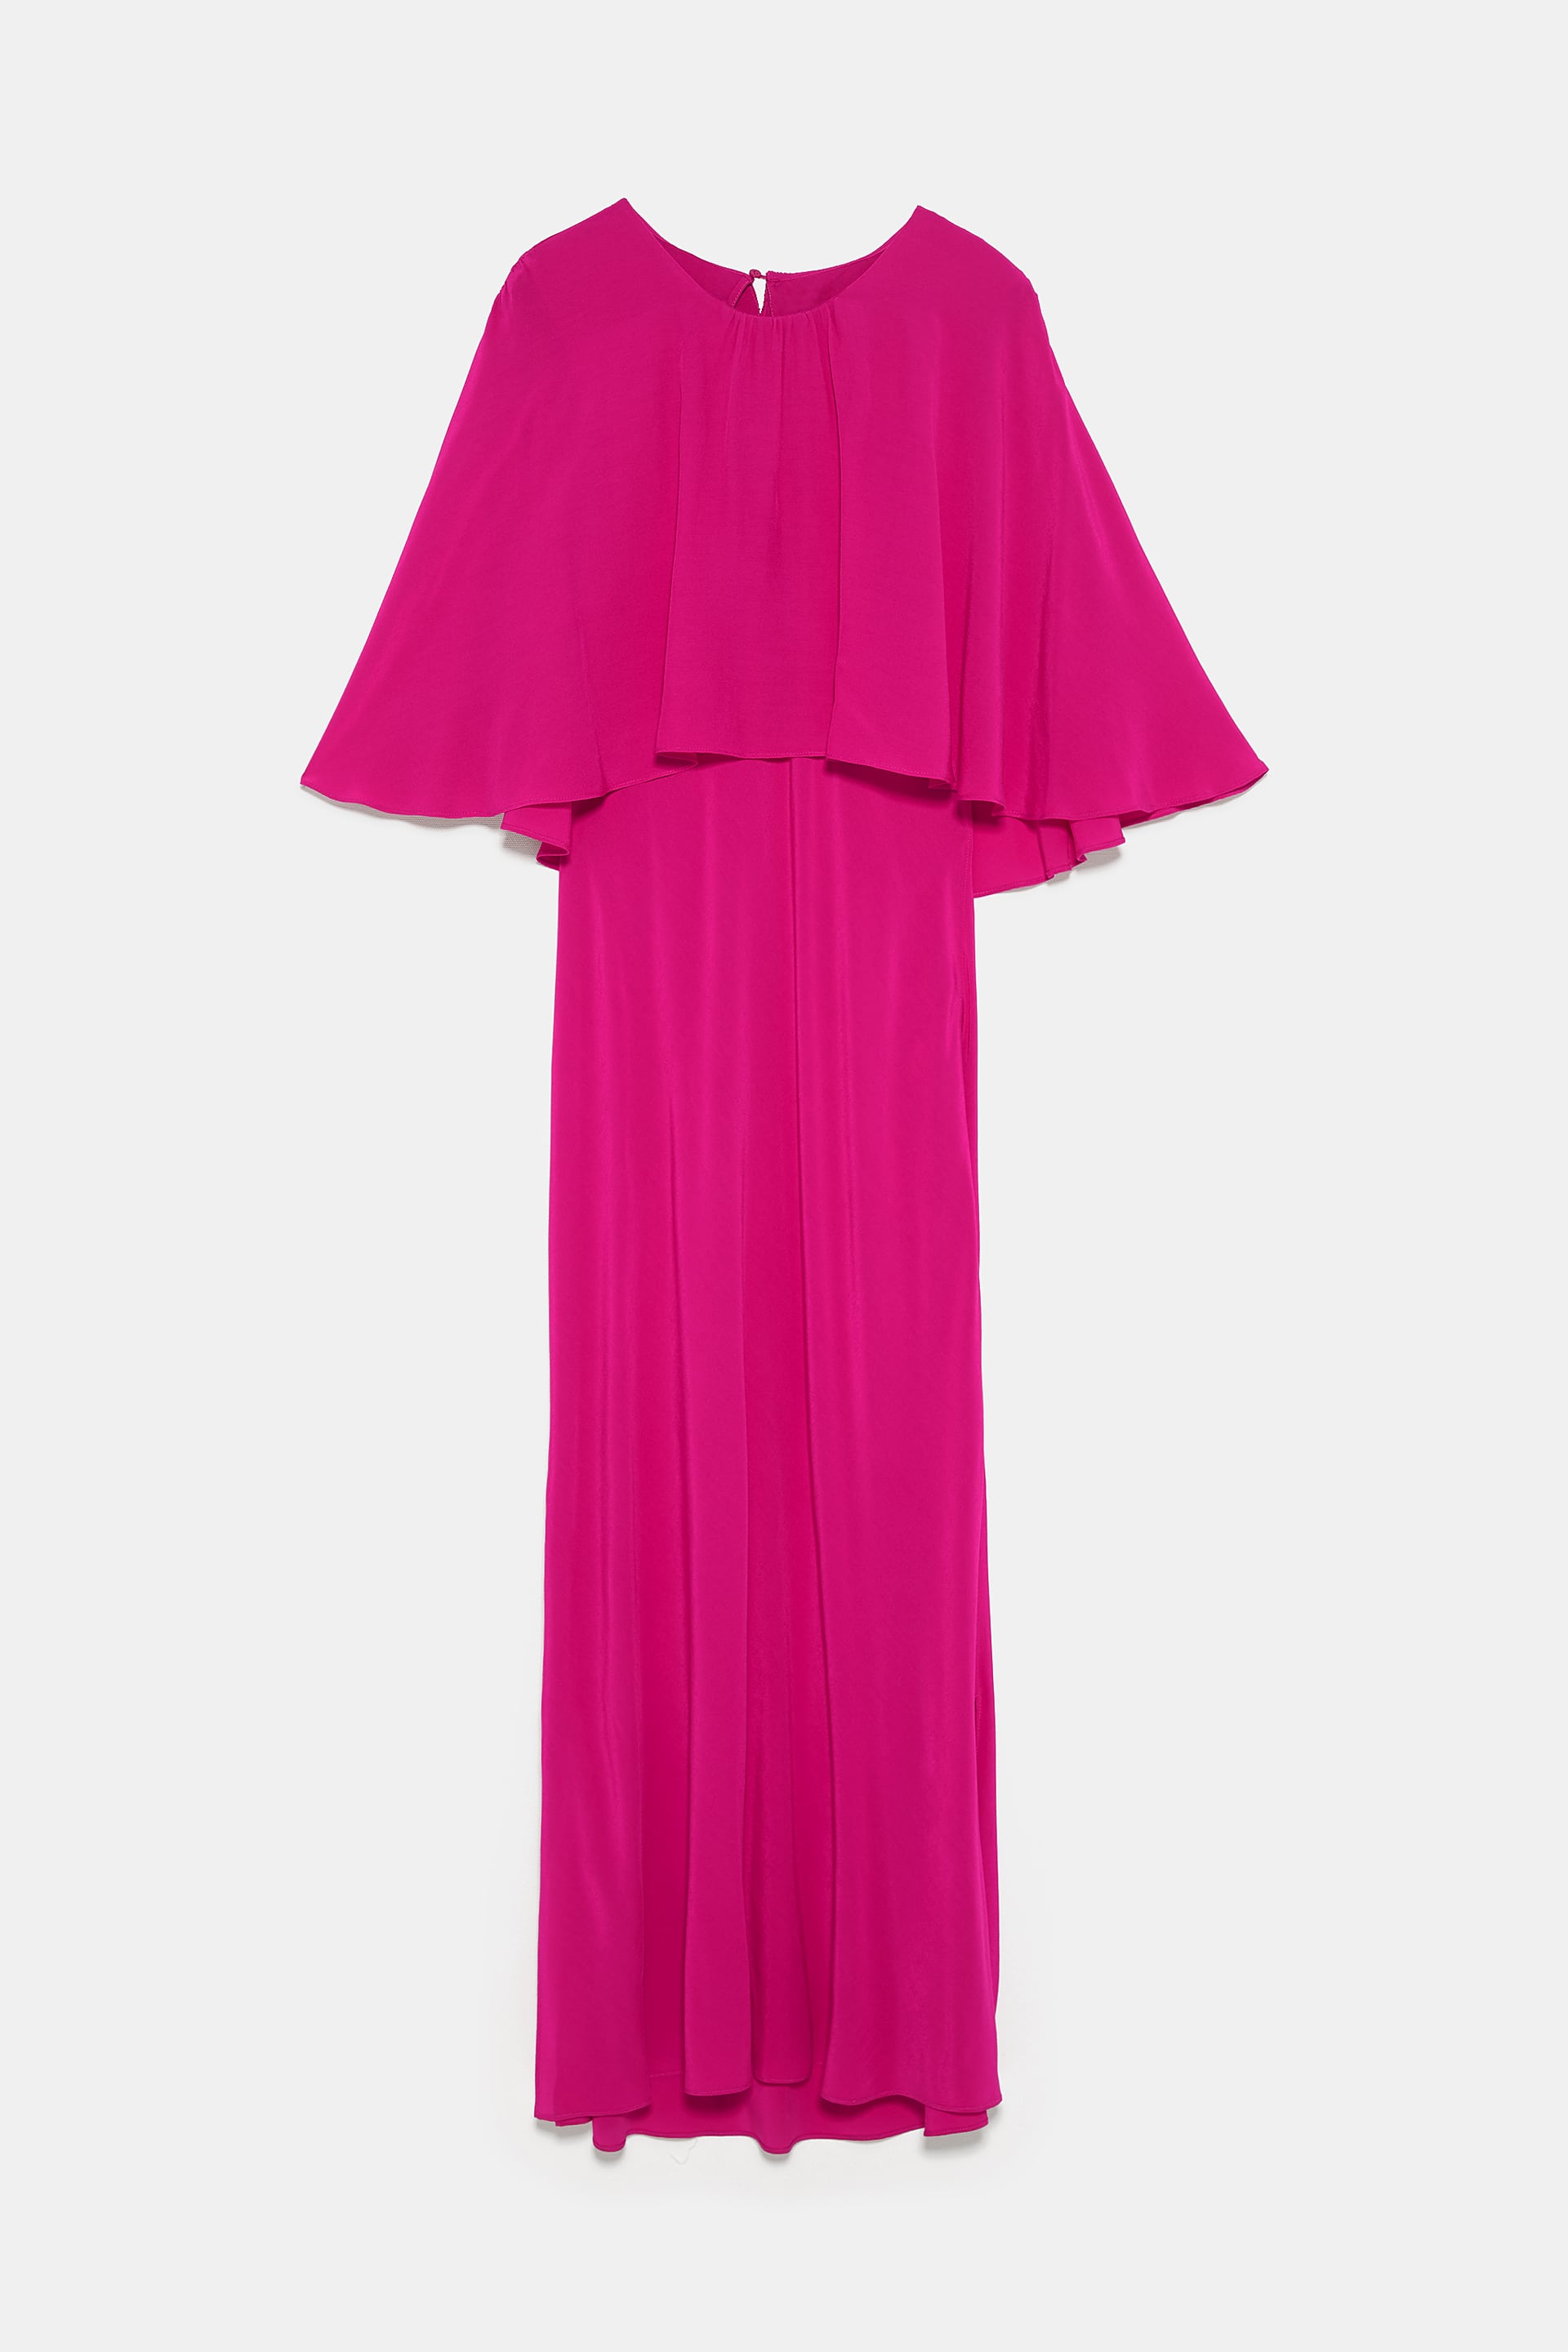 Vestido, Zara, €49,95 6